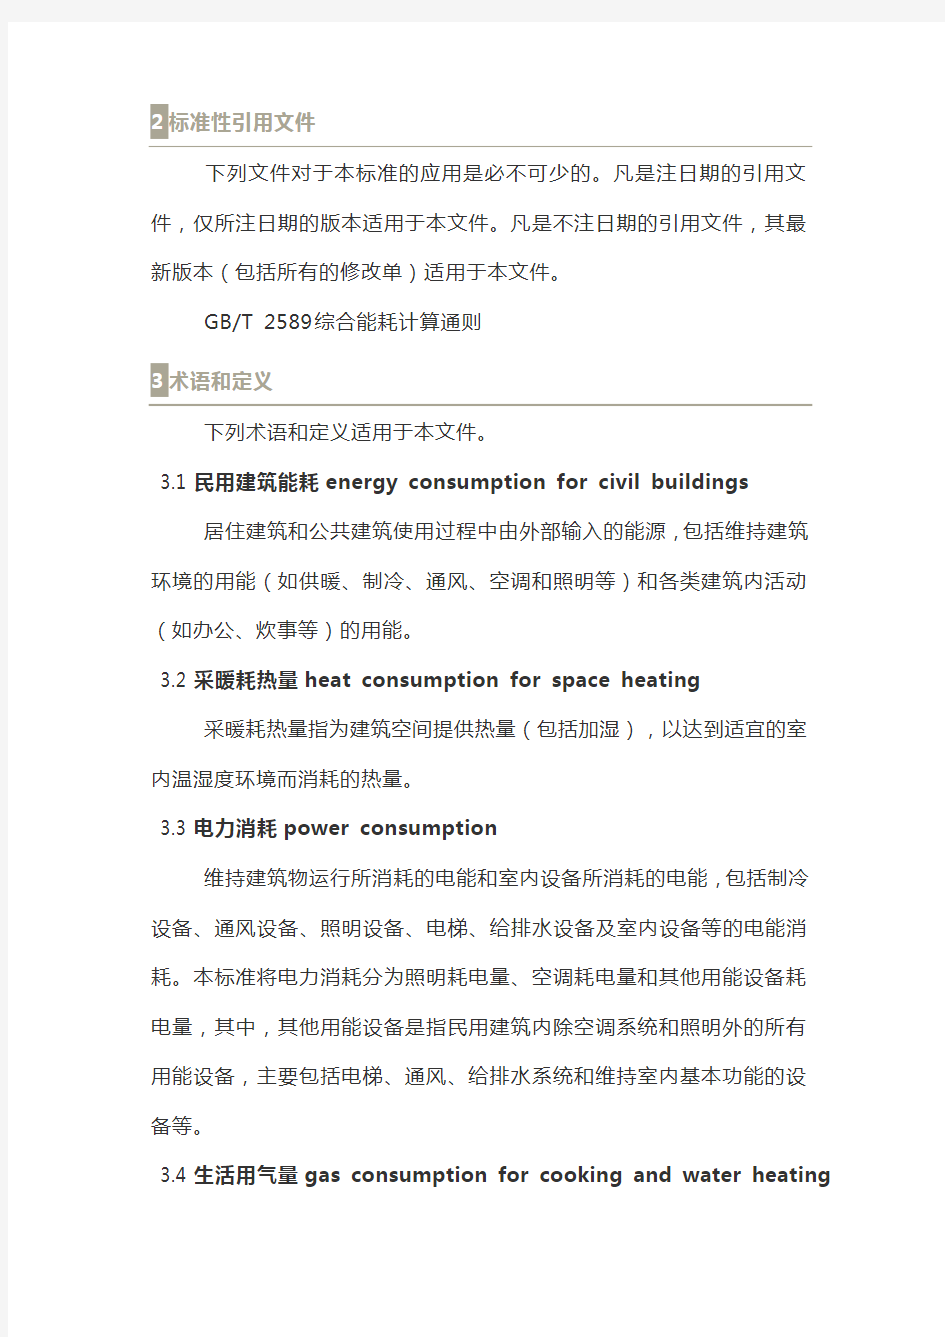 北京市地方标准《民用建筑能耗指标》